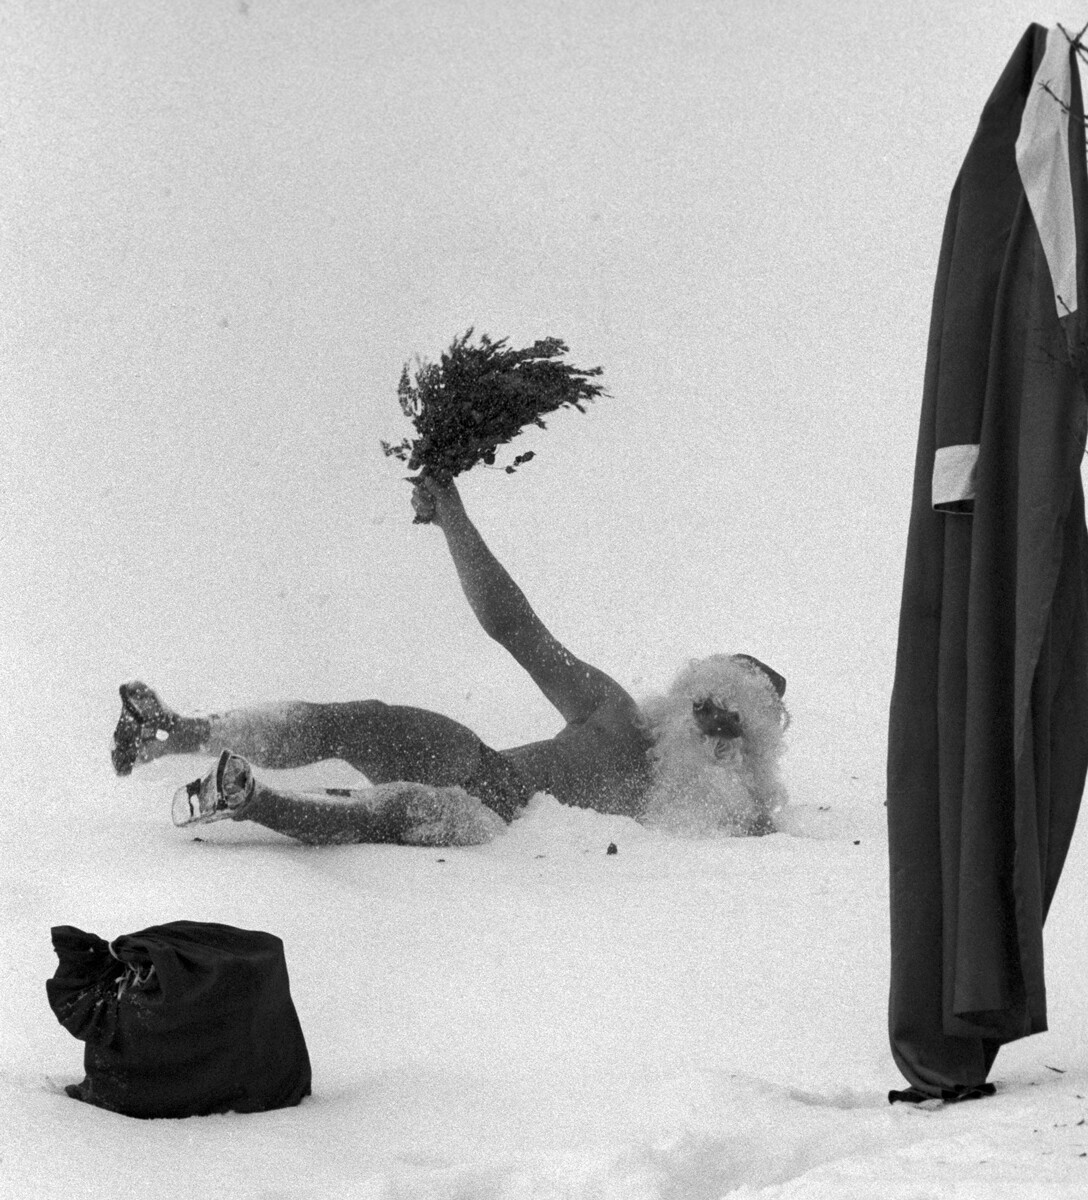 Moskovska regija, 1985. Ded Moroz na snegu po parjenju v banji